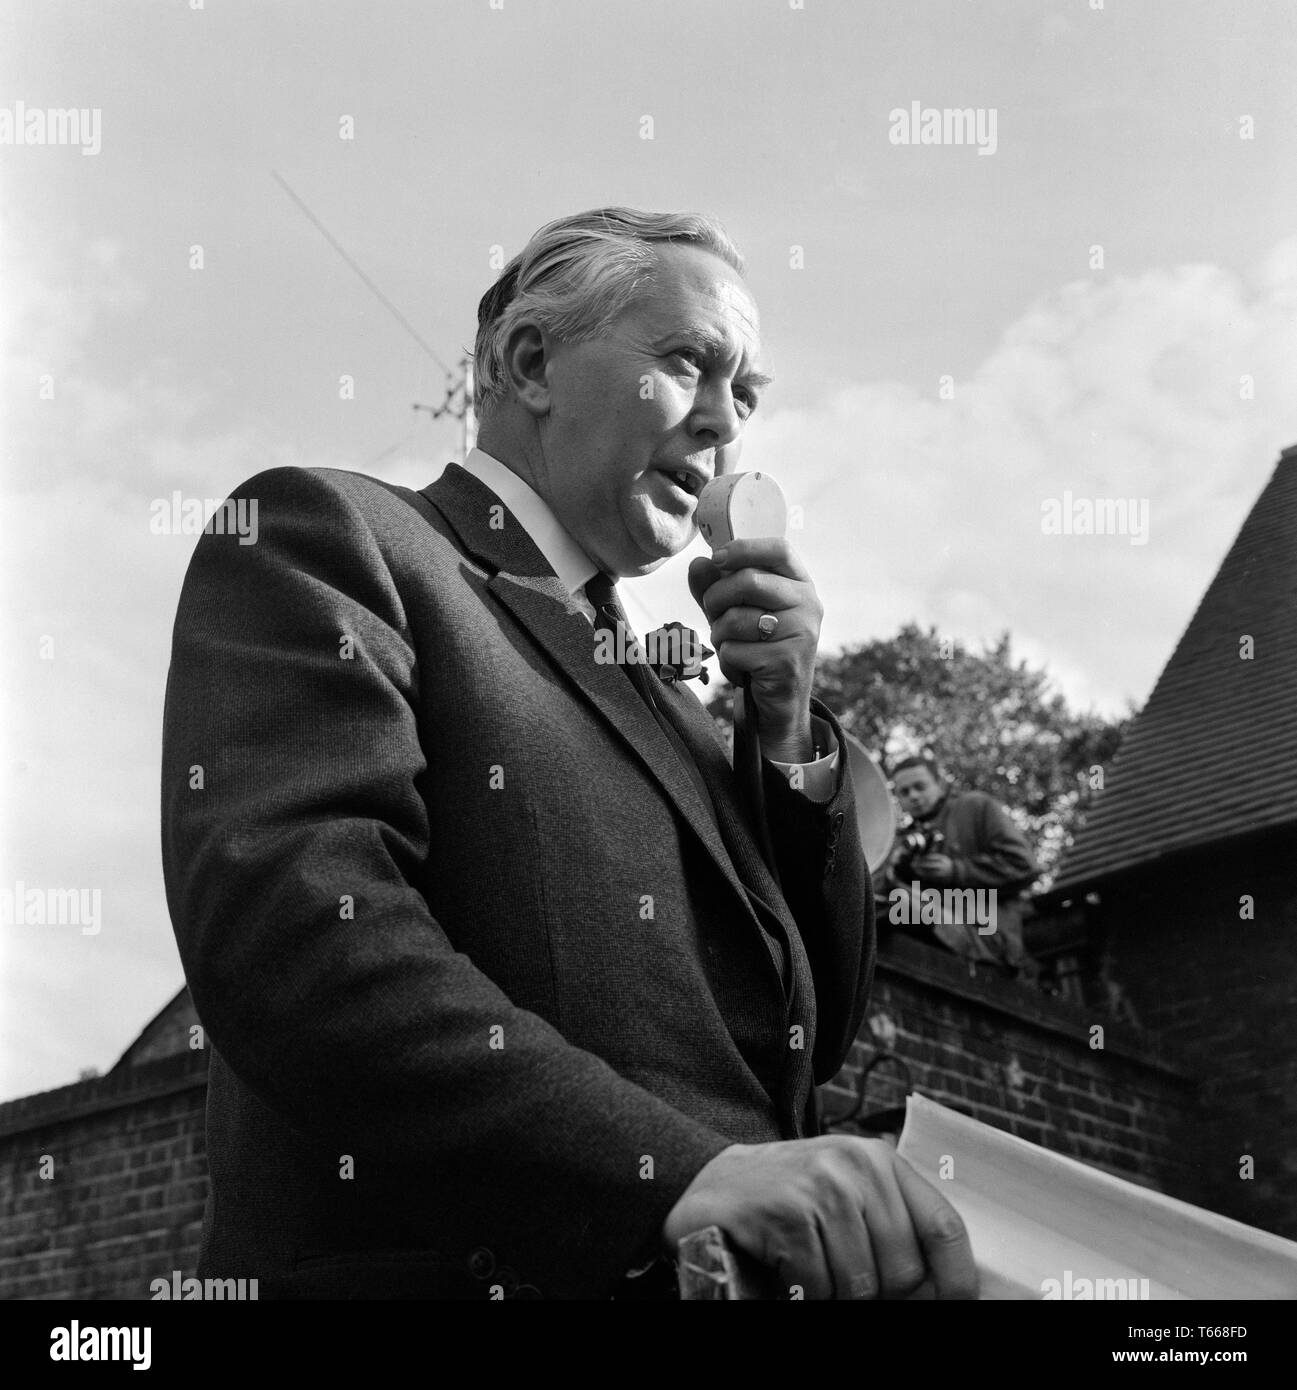 Homme politique et, finalement, le premier ministre Harold Wilson, faisait campagne dans Lewisham, dans le sud de Londres, au cours de l'élection générale britannique de 1964. Banque D'Images